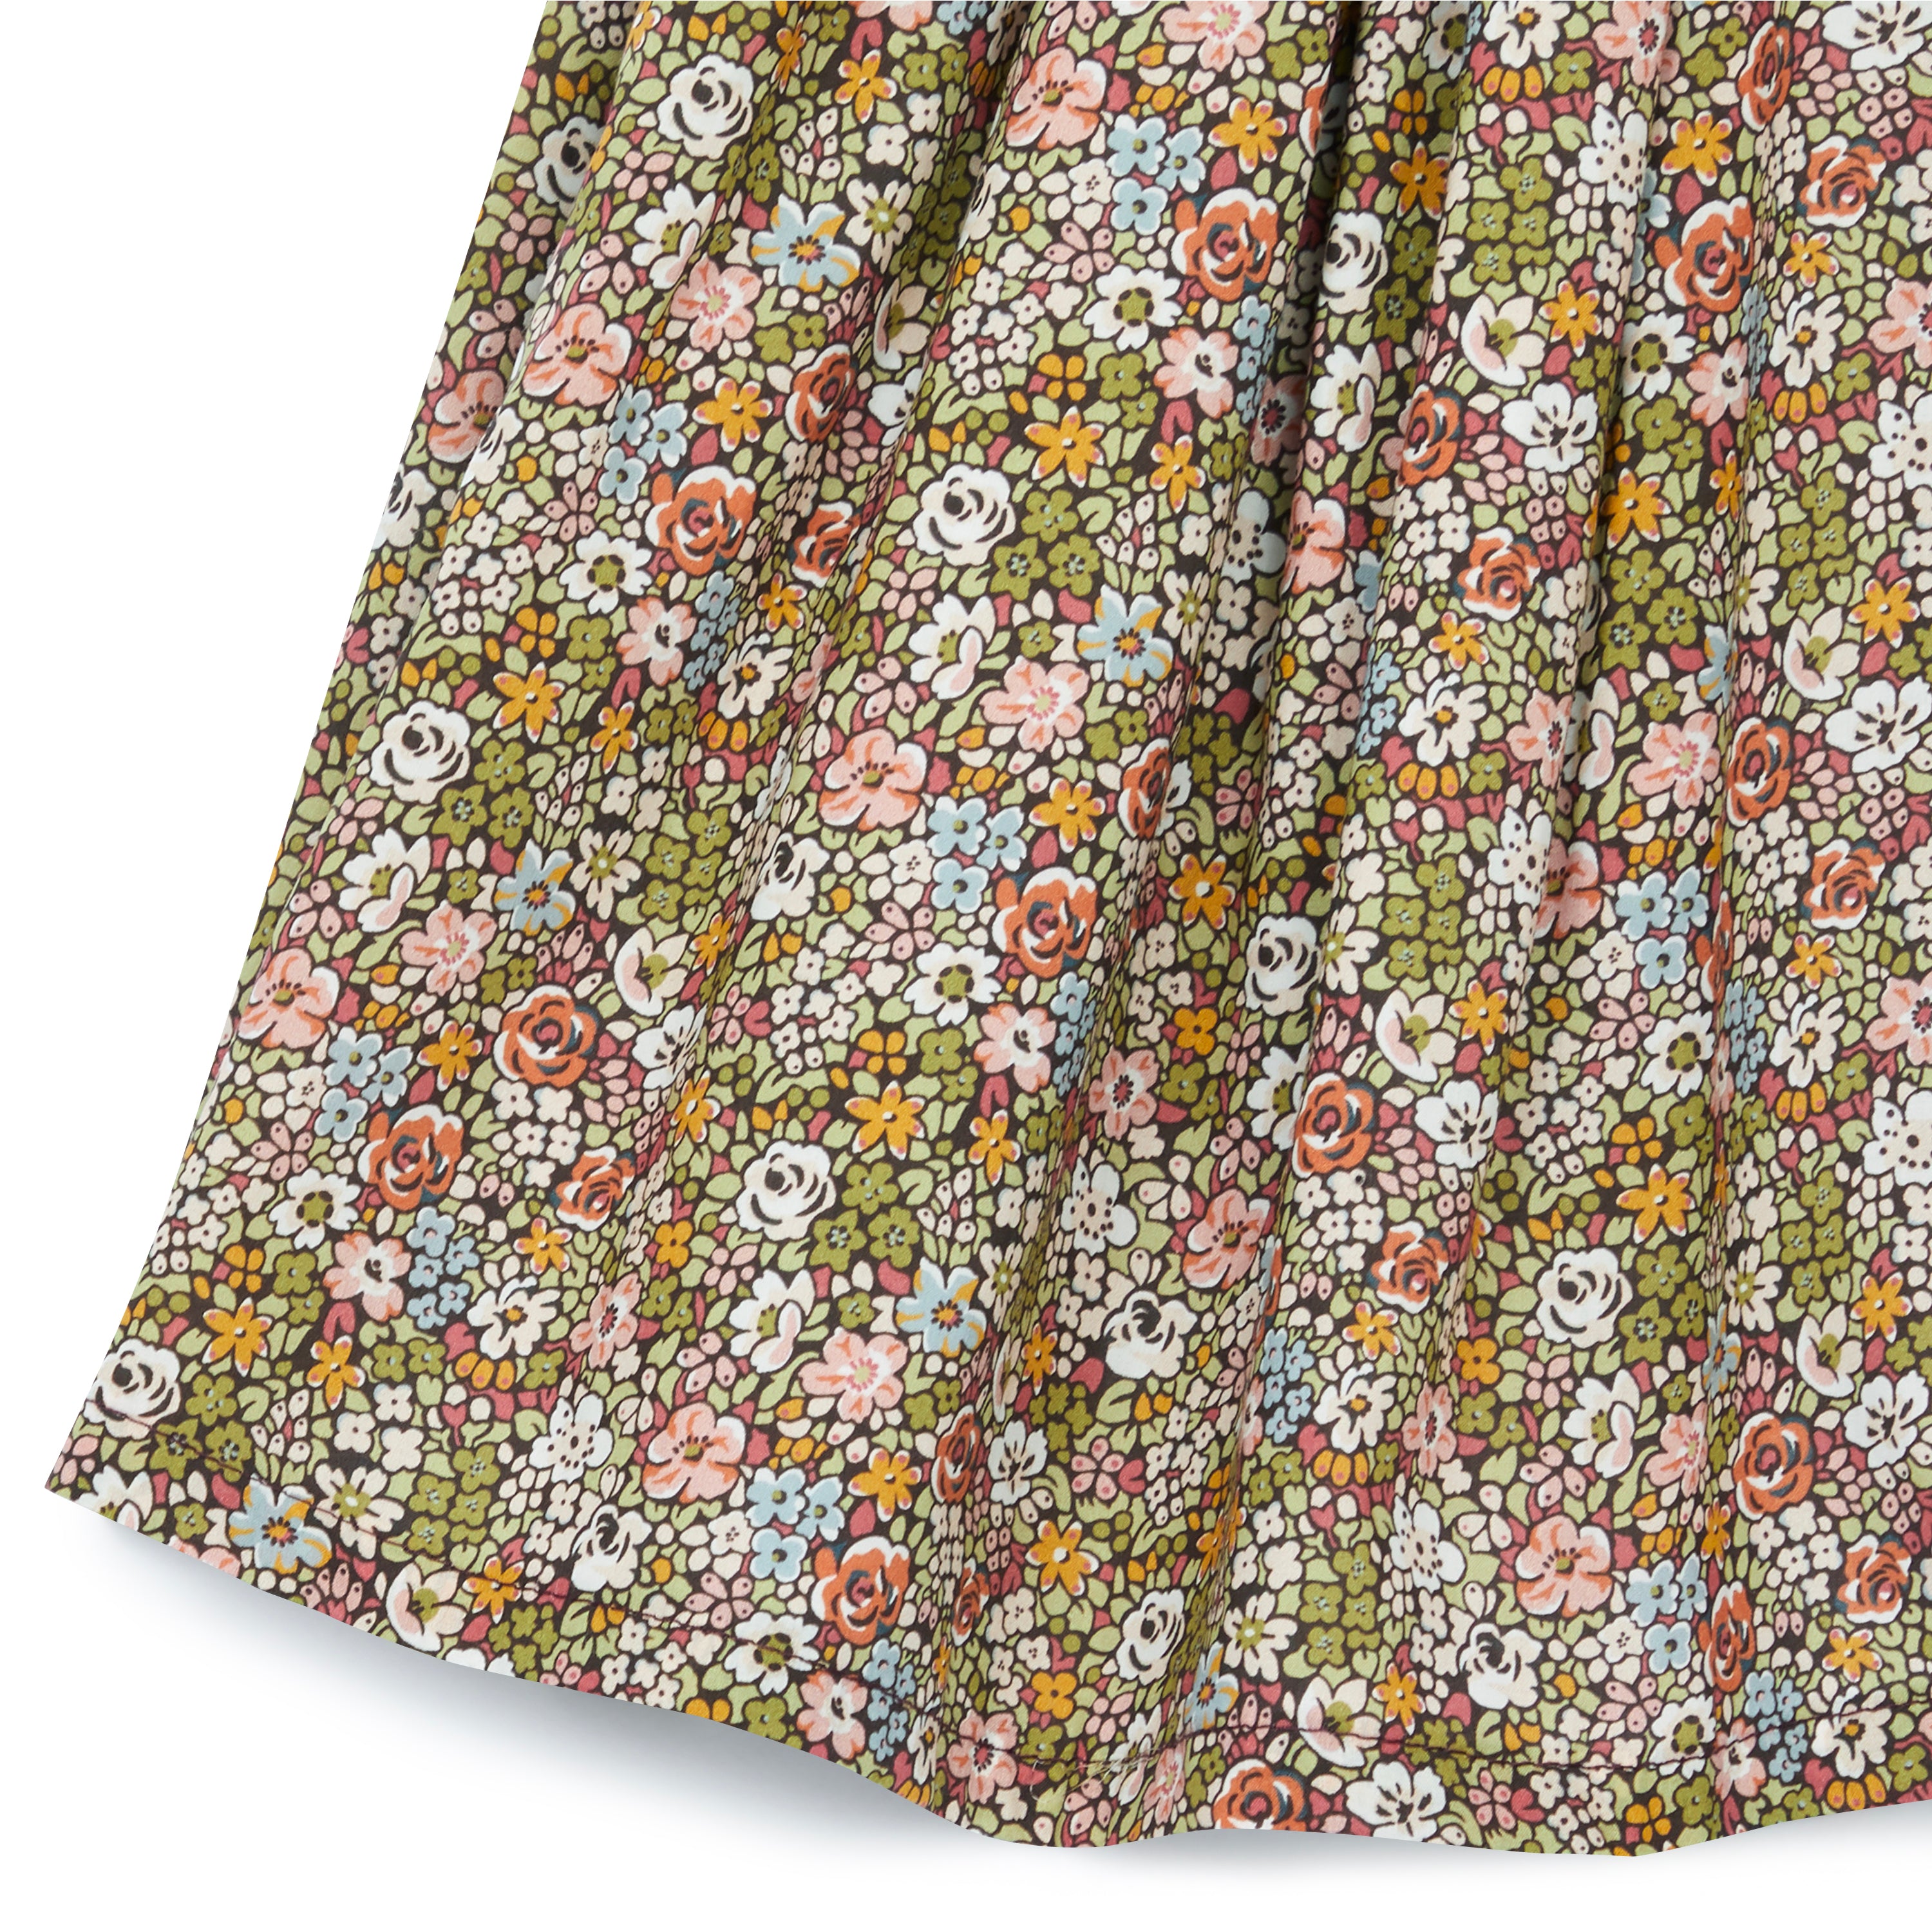 Girls Green Floral Cotton Skirt